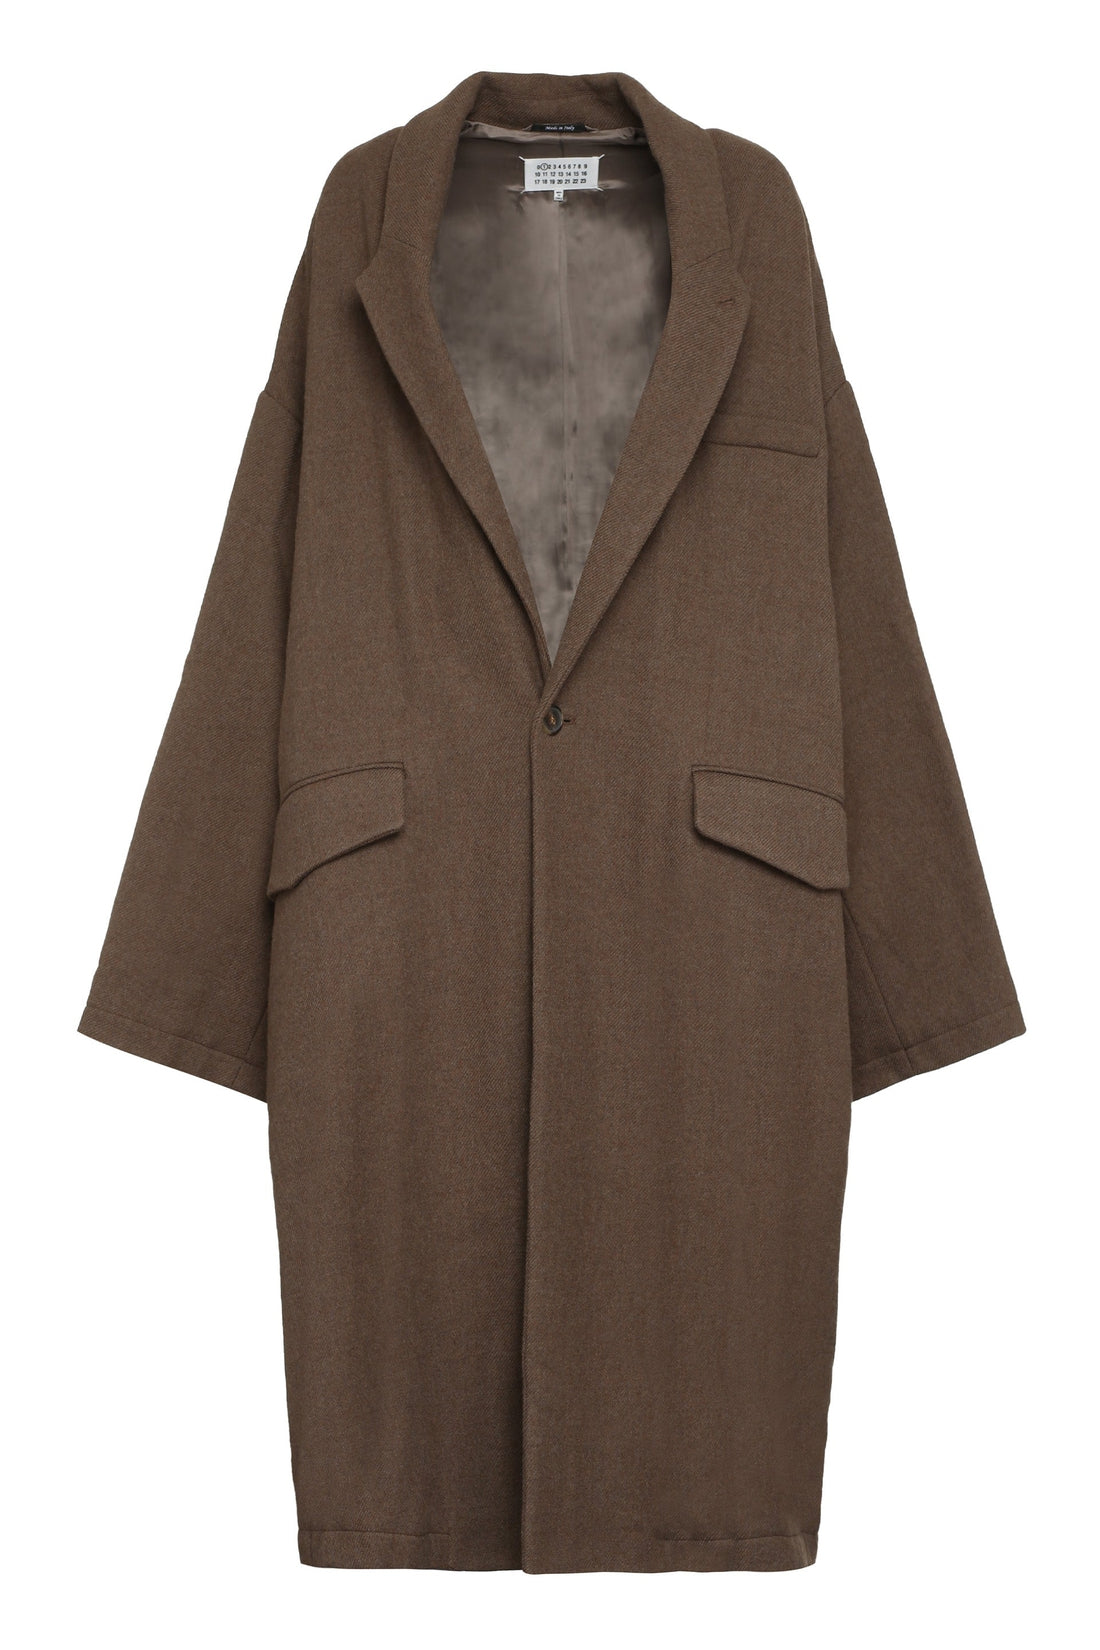 Maison Margiela-OUTLET-SALE-Oversized wool coat-ARCHIVIST